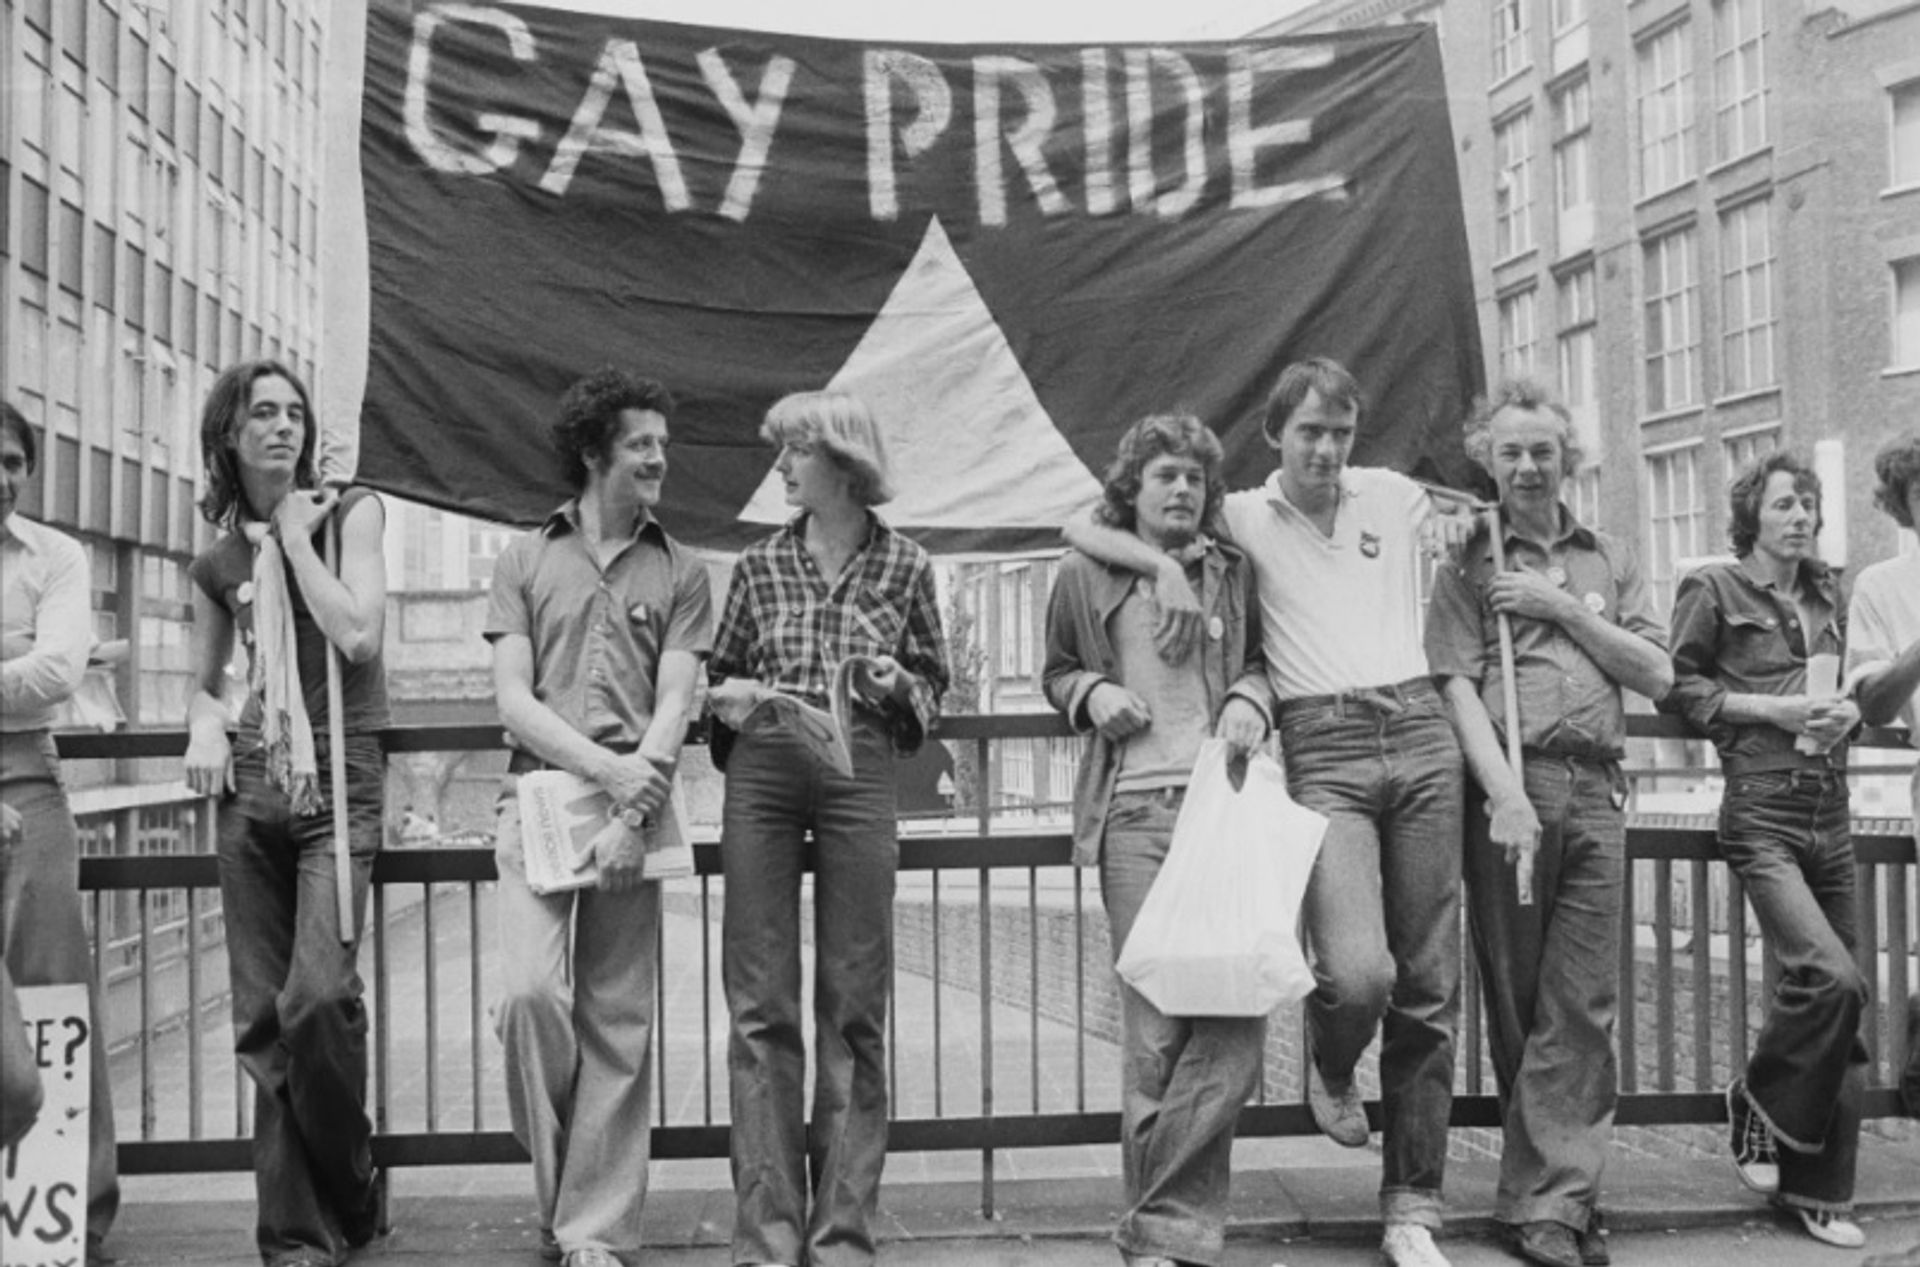 הפגנת גאווה הומוסקסואלית באולד ביילי, בעקבות התביעה בטענה להוצאת דיבה מגונה של מרי וויטהאוס נגד העיתון ההומוסקסואלי Gay News, לונדון, בריטניה, 4 ביולי 1977

צילום: Evening Standard / Hulton Archive / Getty Images